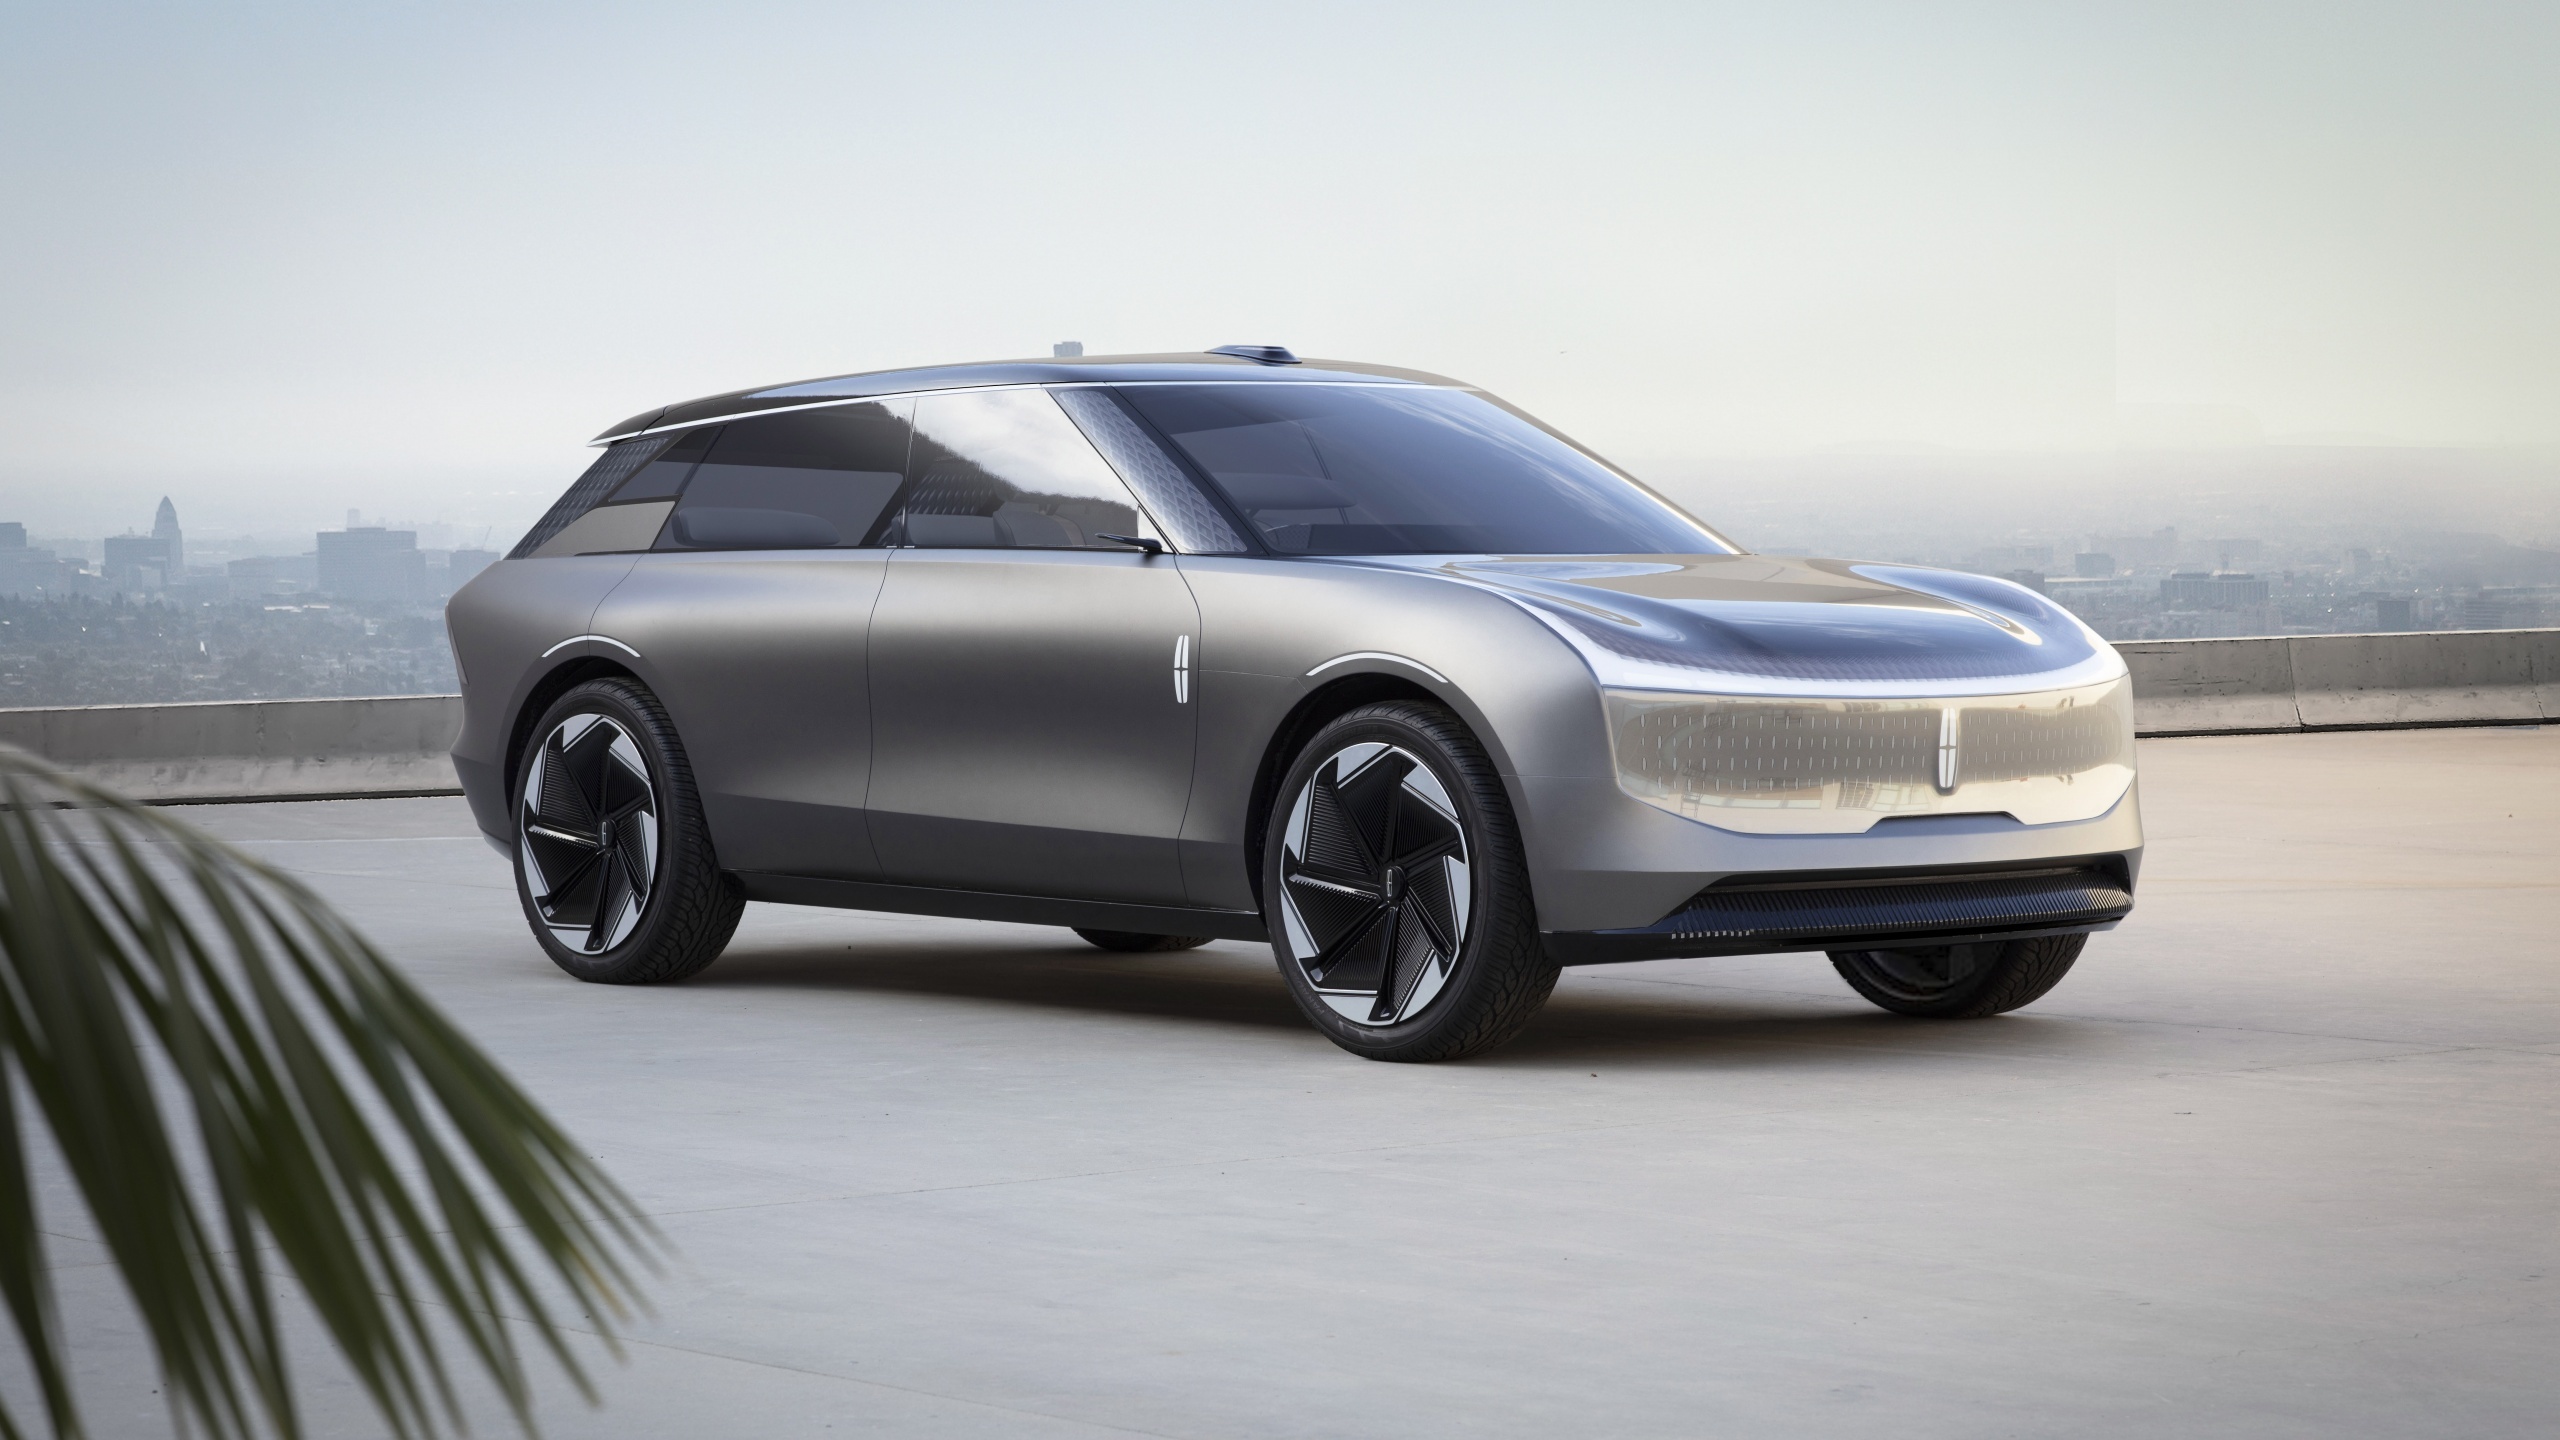 Lincoln Star concept, Autonomous car, Electric SUV, Auto wallpapers, 2560x1440 HD Desktop